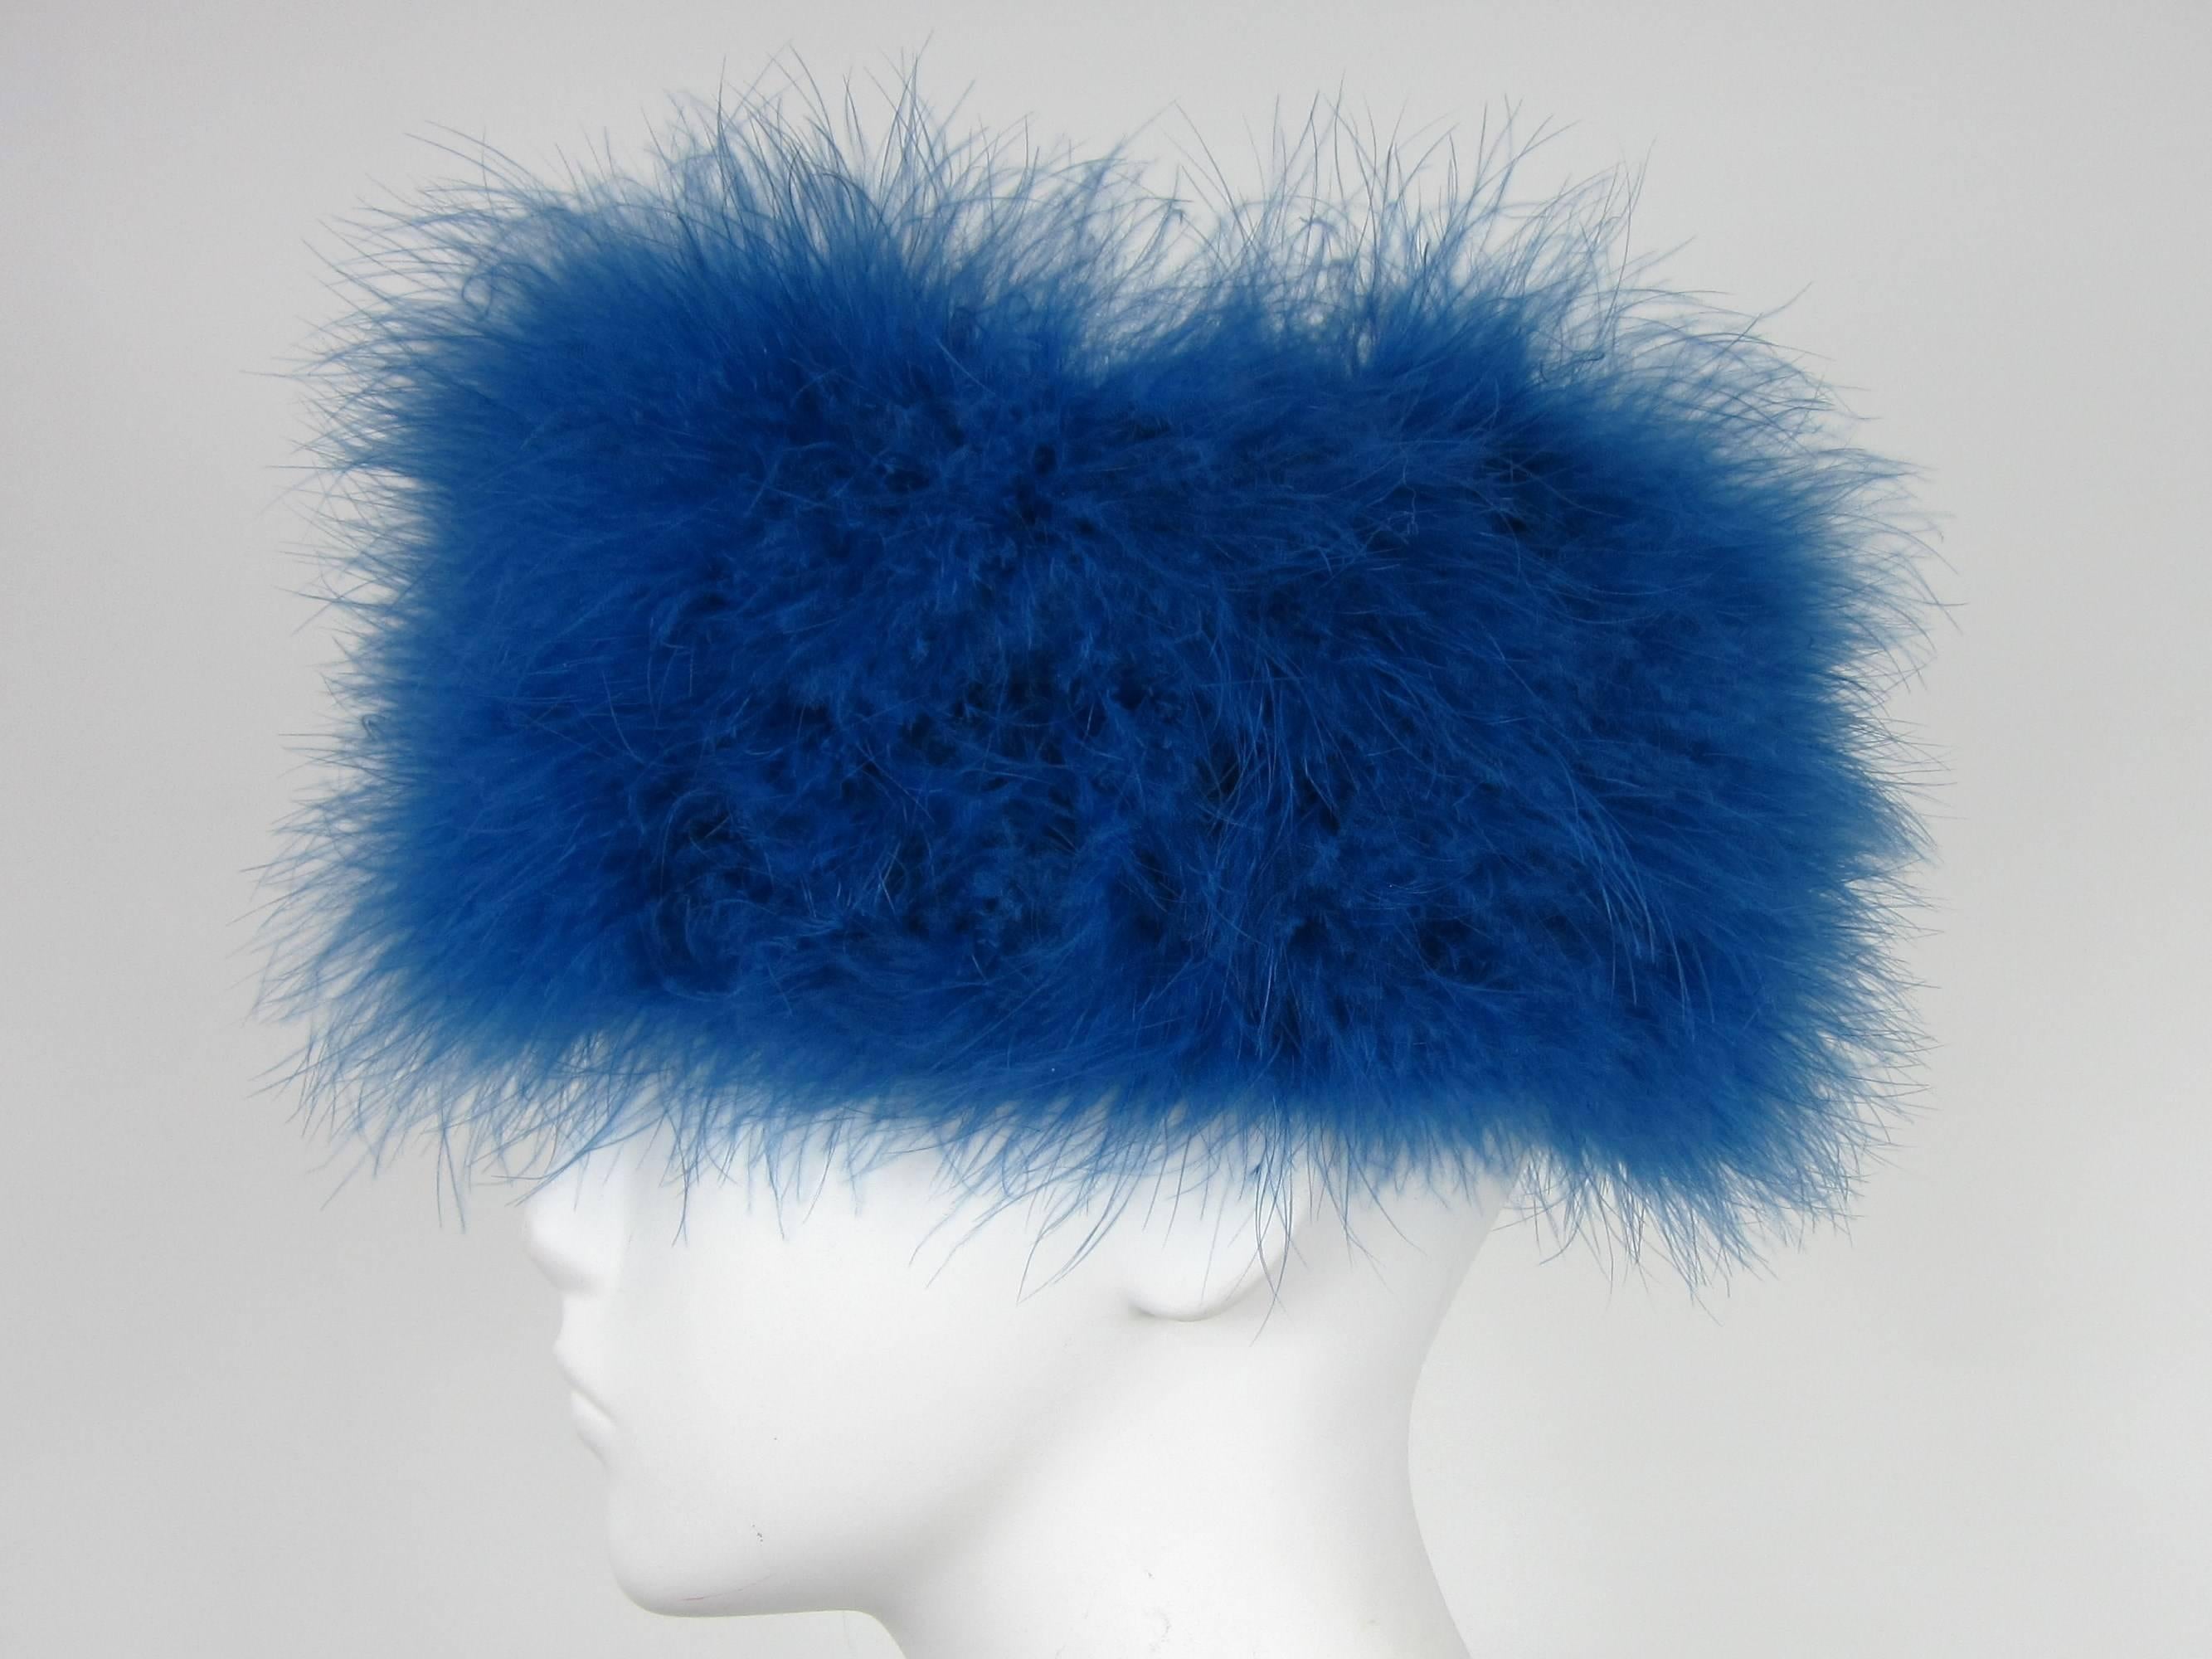 Deep Blue Givenchy Gefiederten Hut Messung 22 innen Umfang. Ungefähr eine Größe 7  - 4.5  Hoch. Schauen Sie unbedingt in unserem Geschäft nach weiteren fabelhaften Stücken aus dieser Collection'S. Seit 2013 verkaufen wir diese Collection'S auf Platz